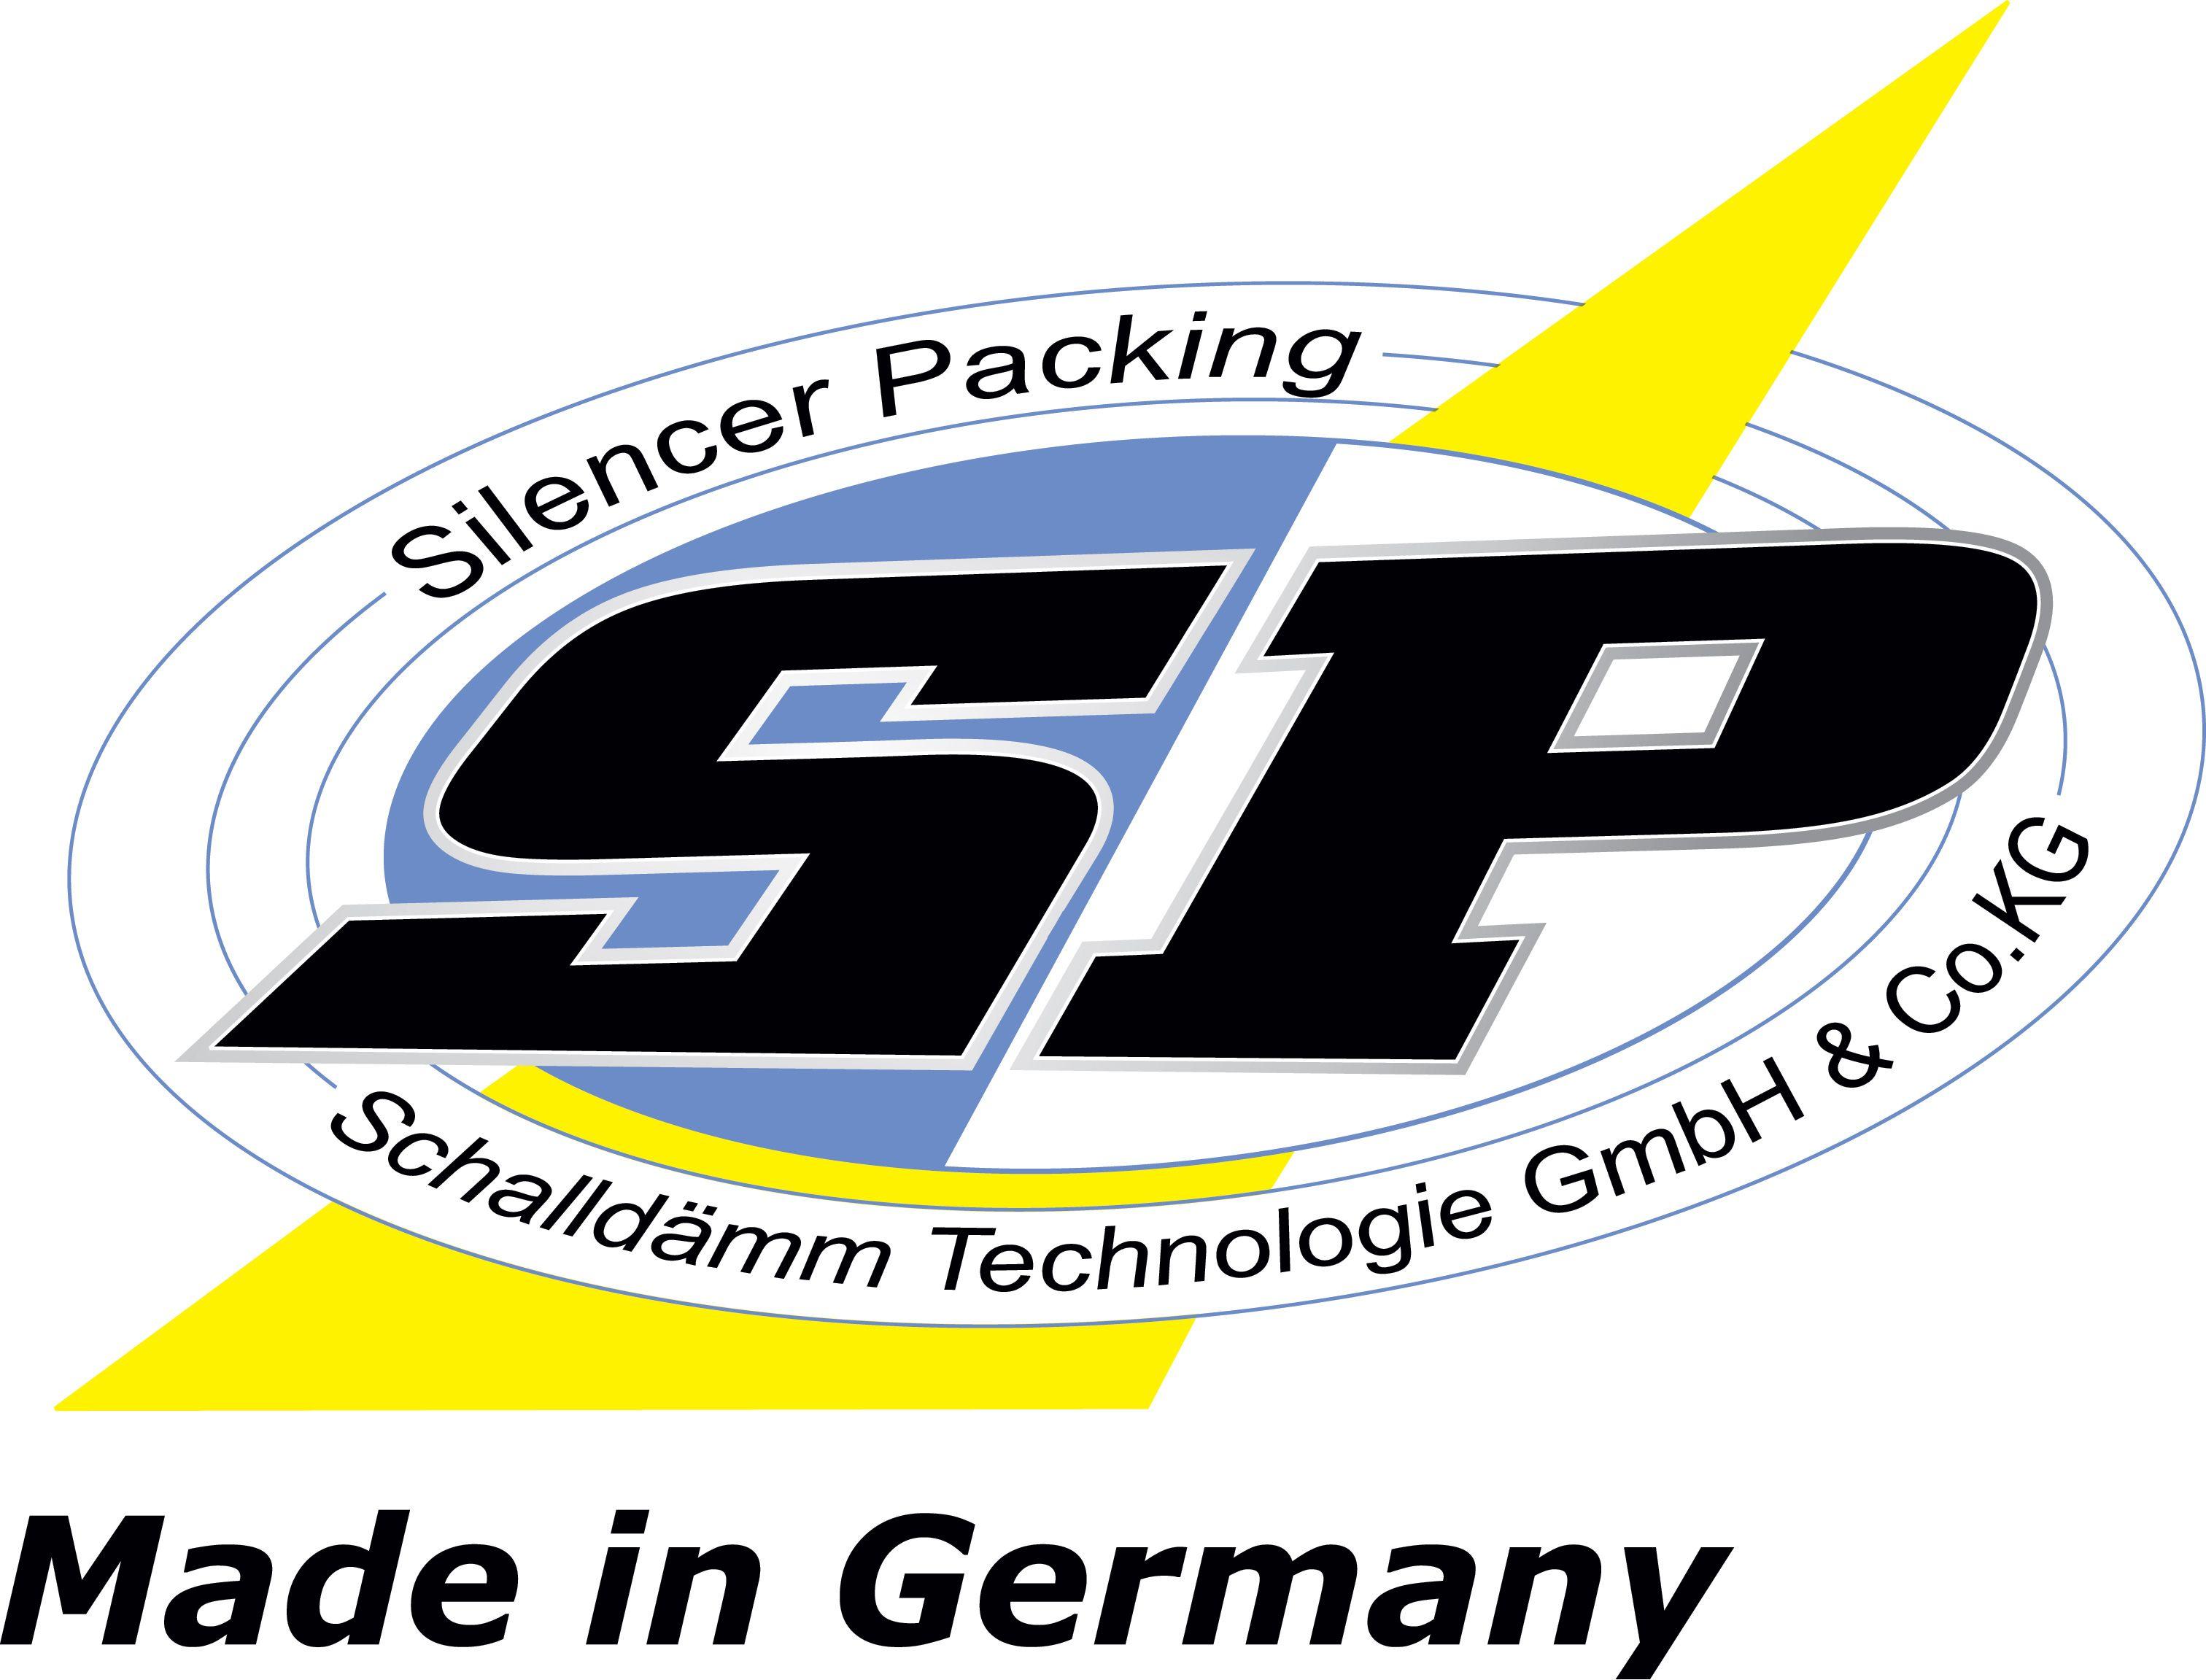 SP Schalldämm Technologie GmbH & Co.KG. Silent Sport Racing Team